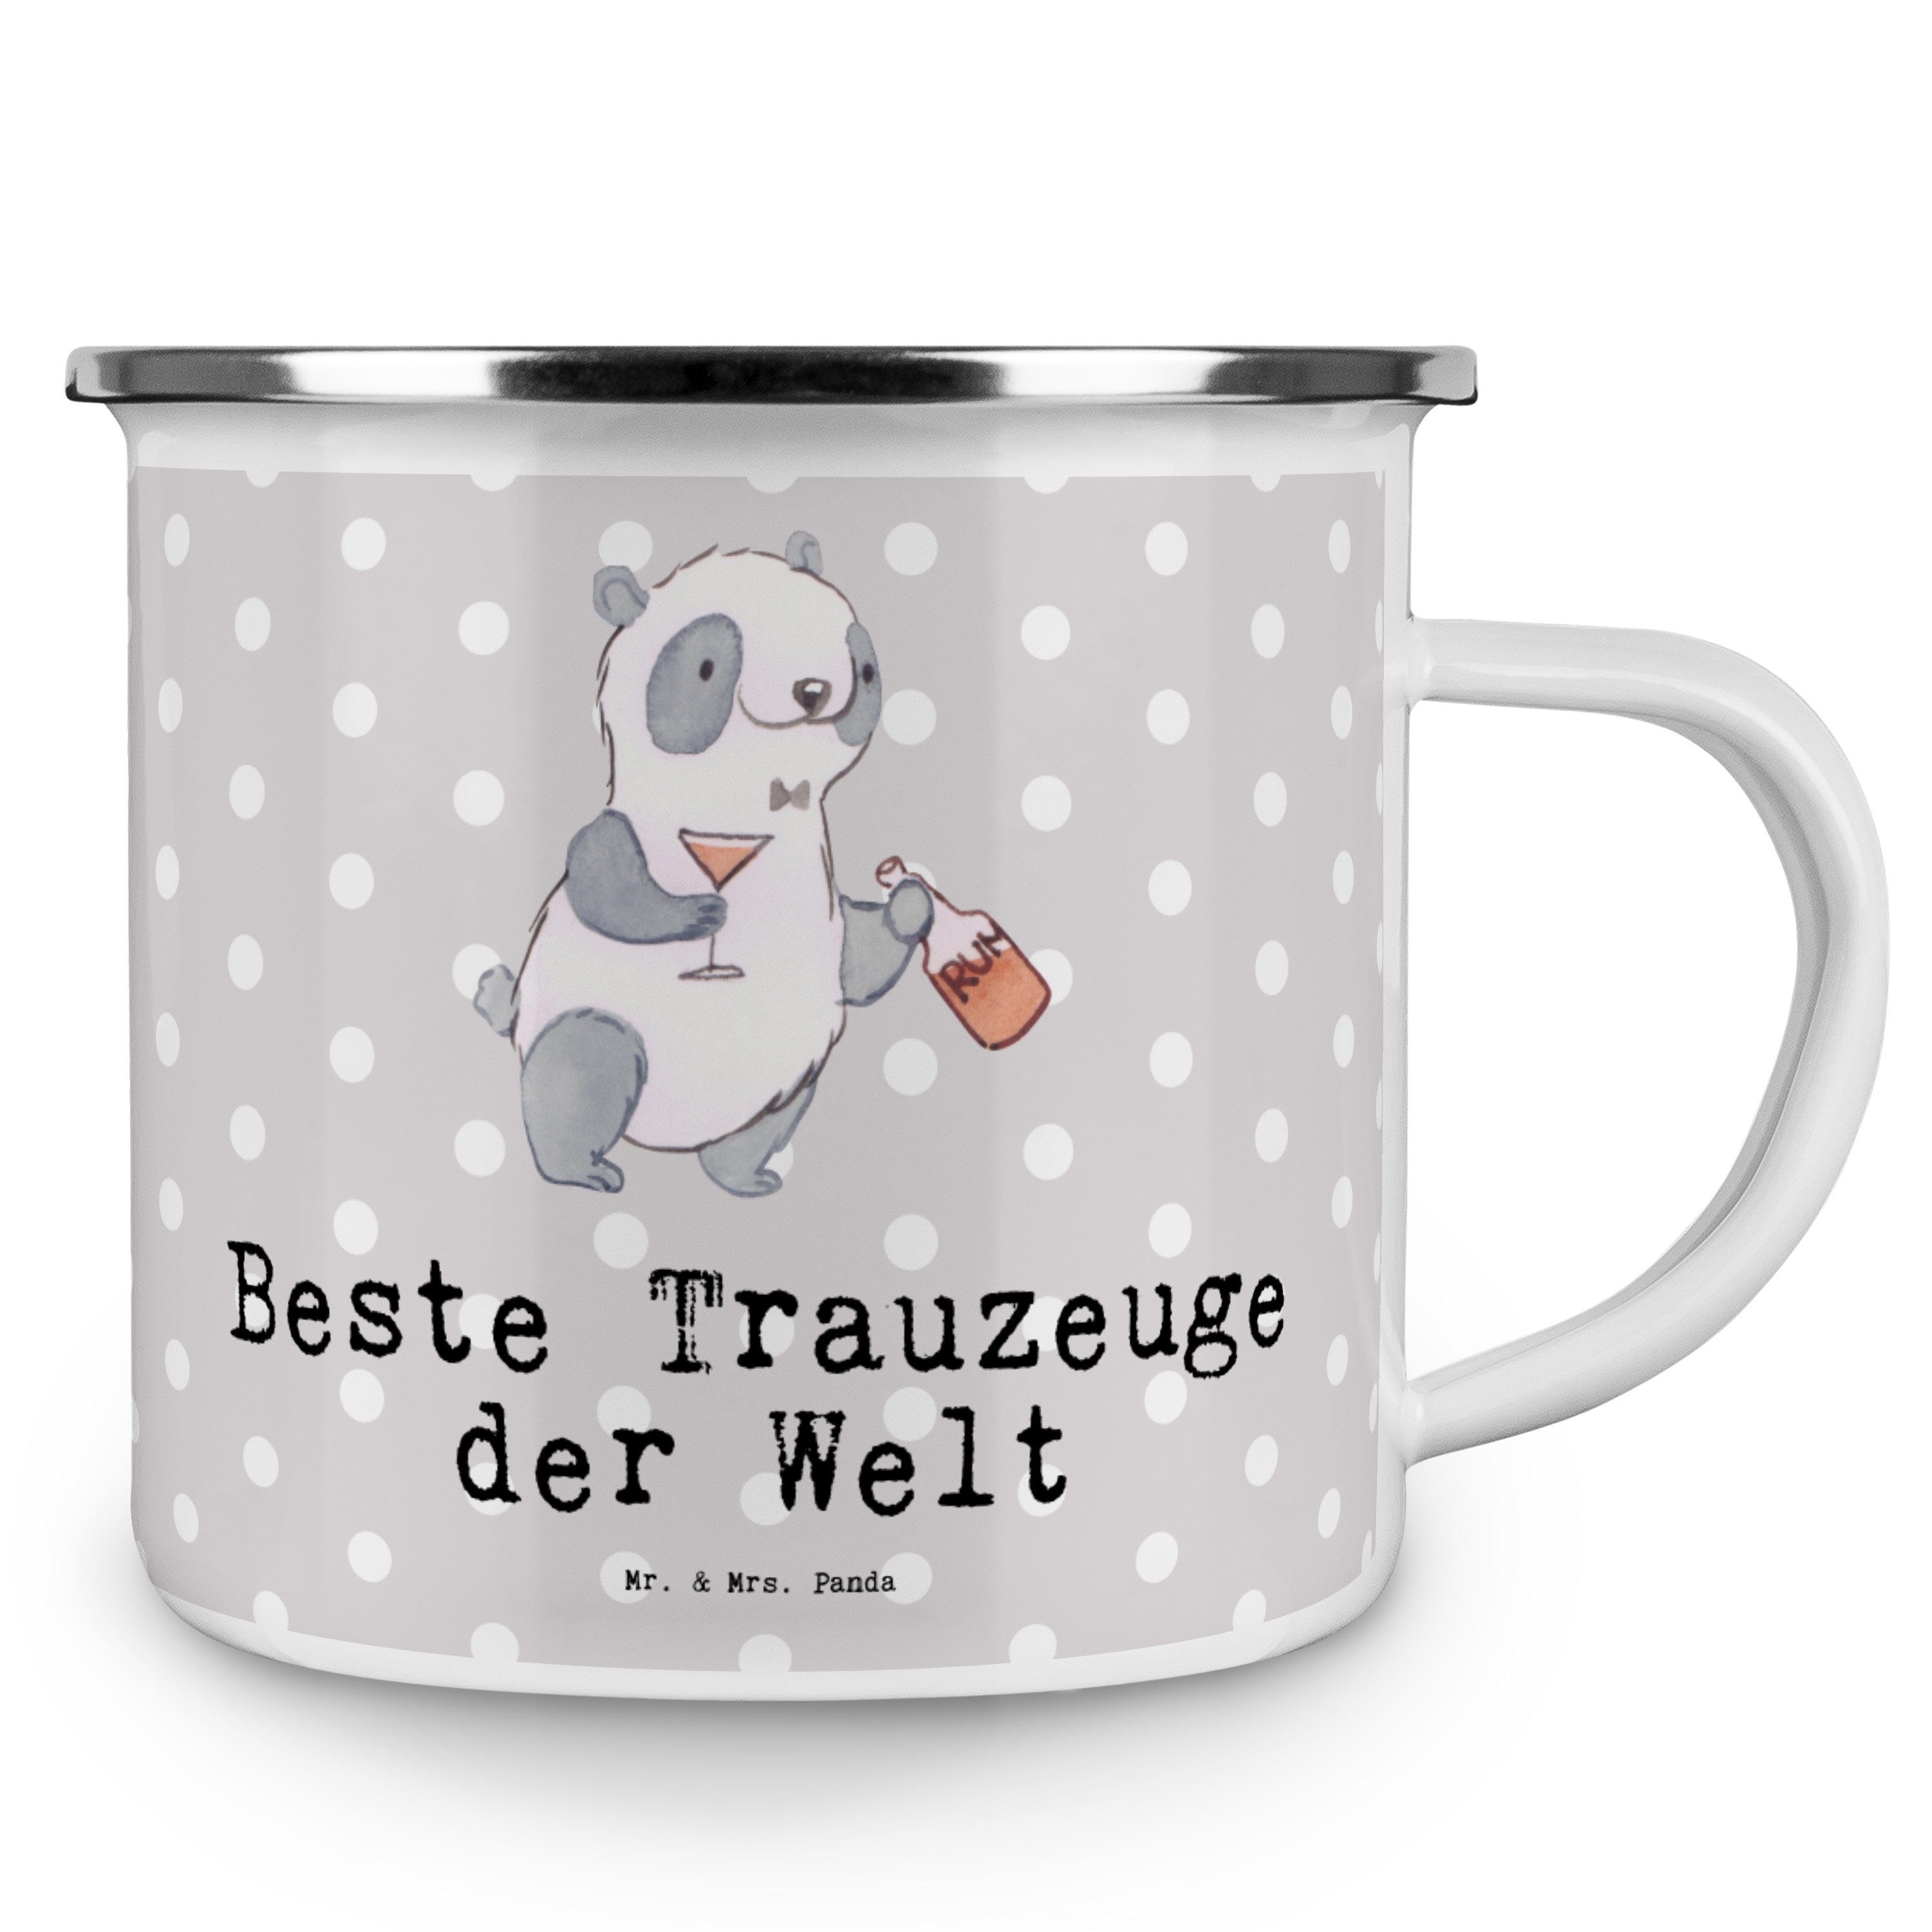 Grau Panda Br, Trauzeuge Panda Emaille - Kirche, - Bester Mr. Mrs. Welt der Becher Pastell & Geschenk,